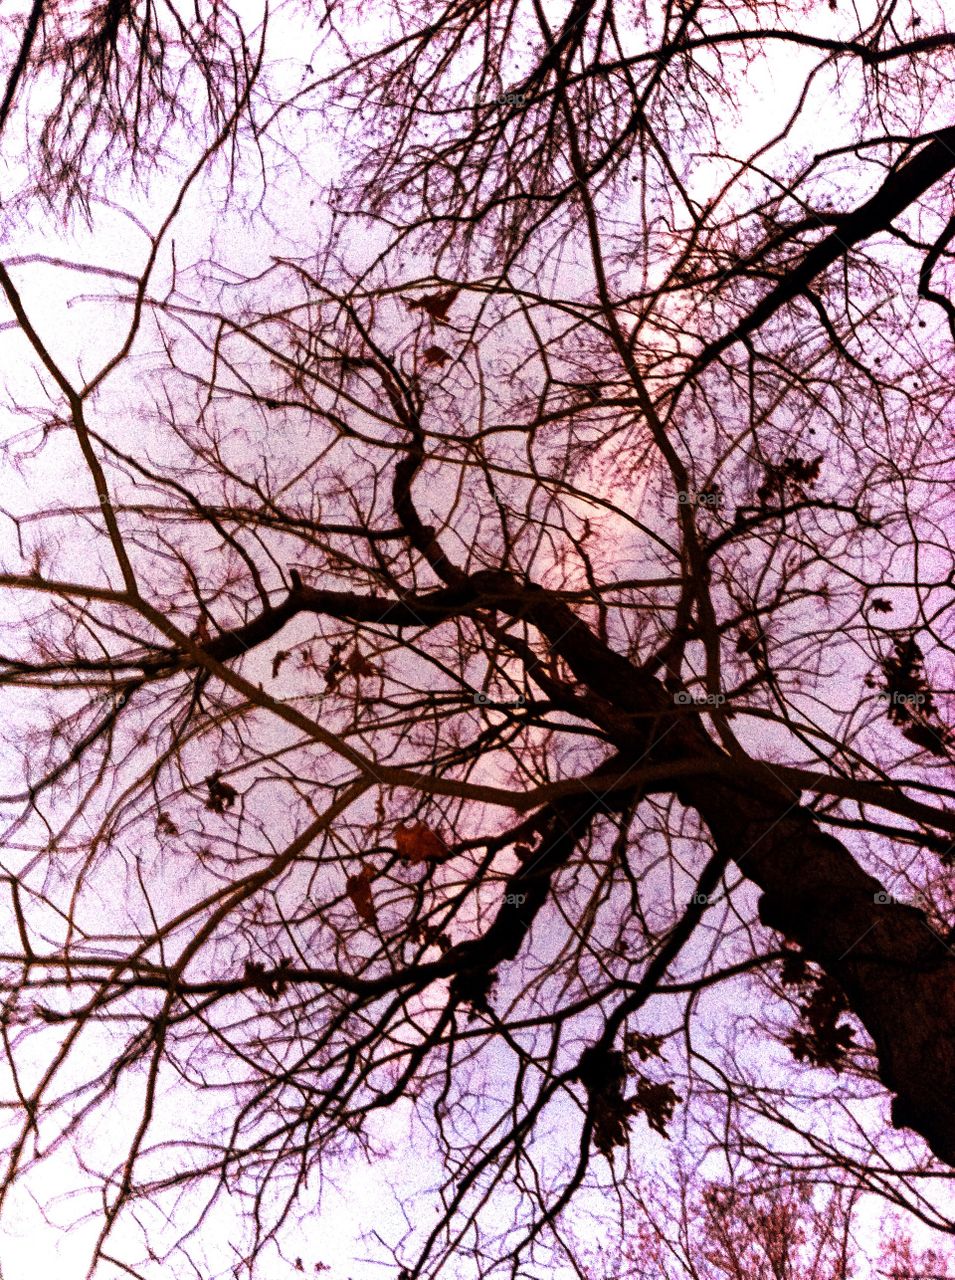 Treetop at dusk